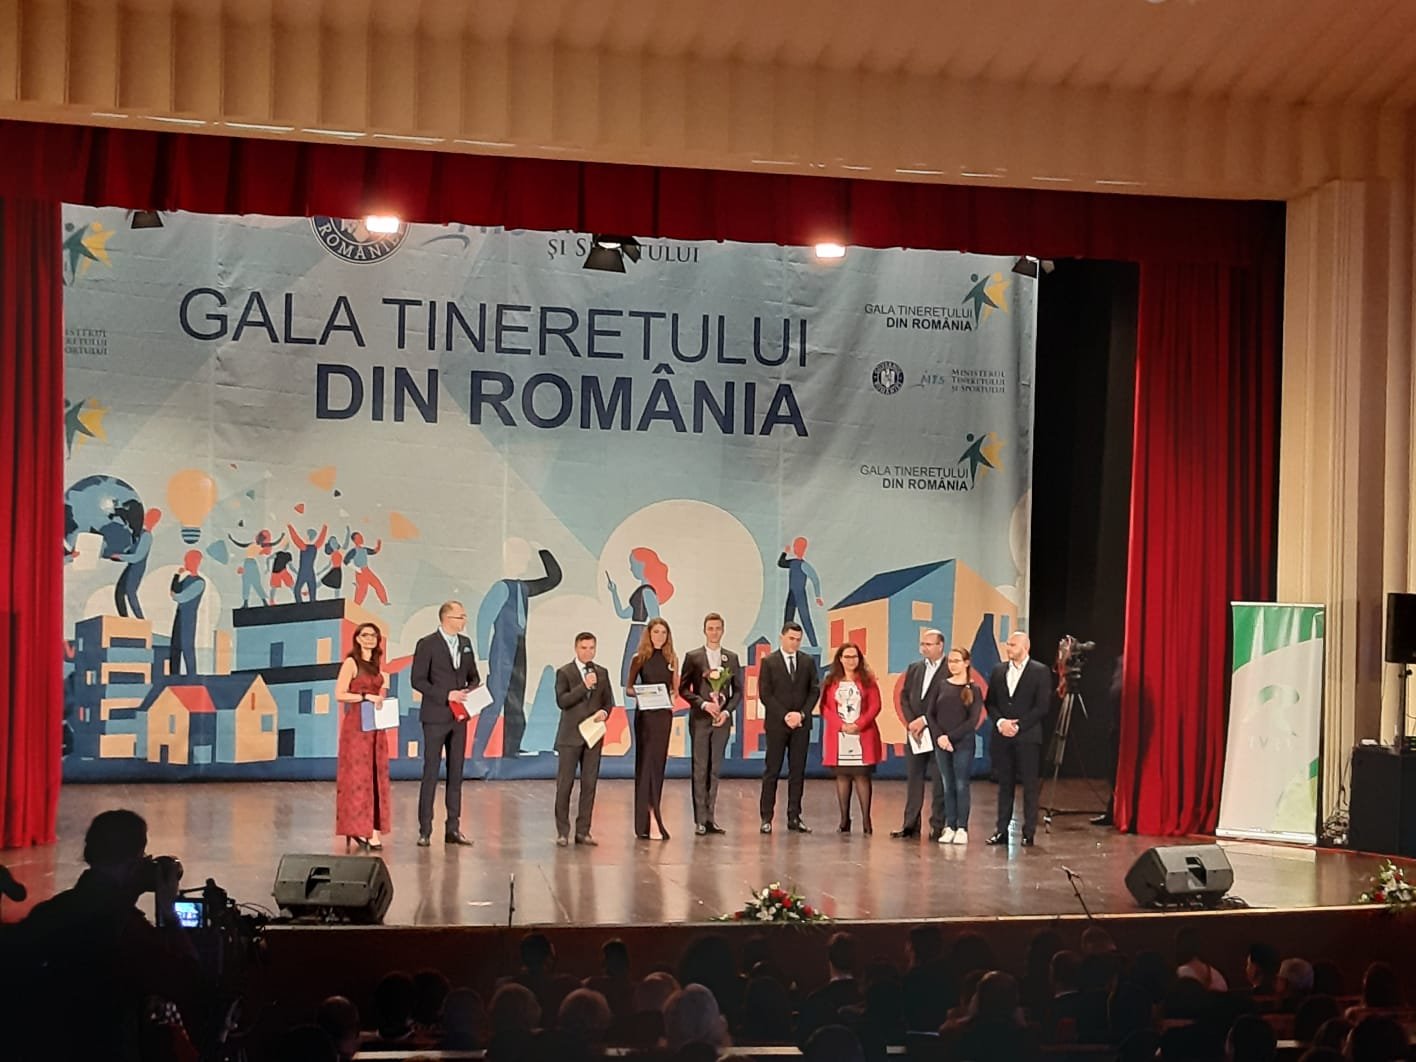  FOTO: Casa de Cultură a Studenților Iași, premiată la Gala Tineretului din România